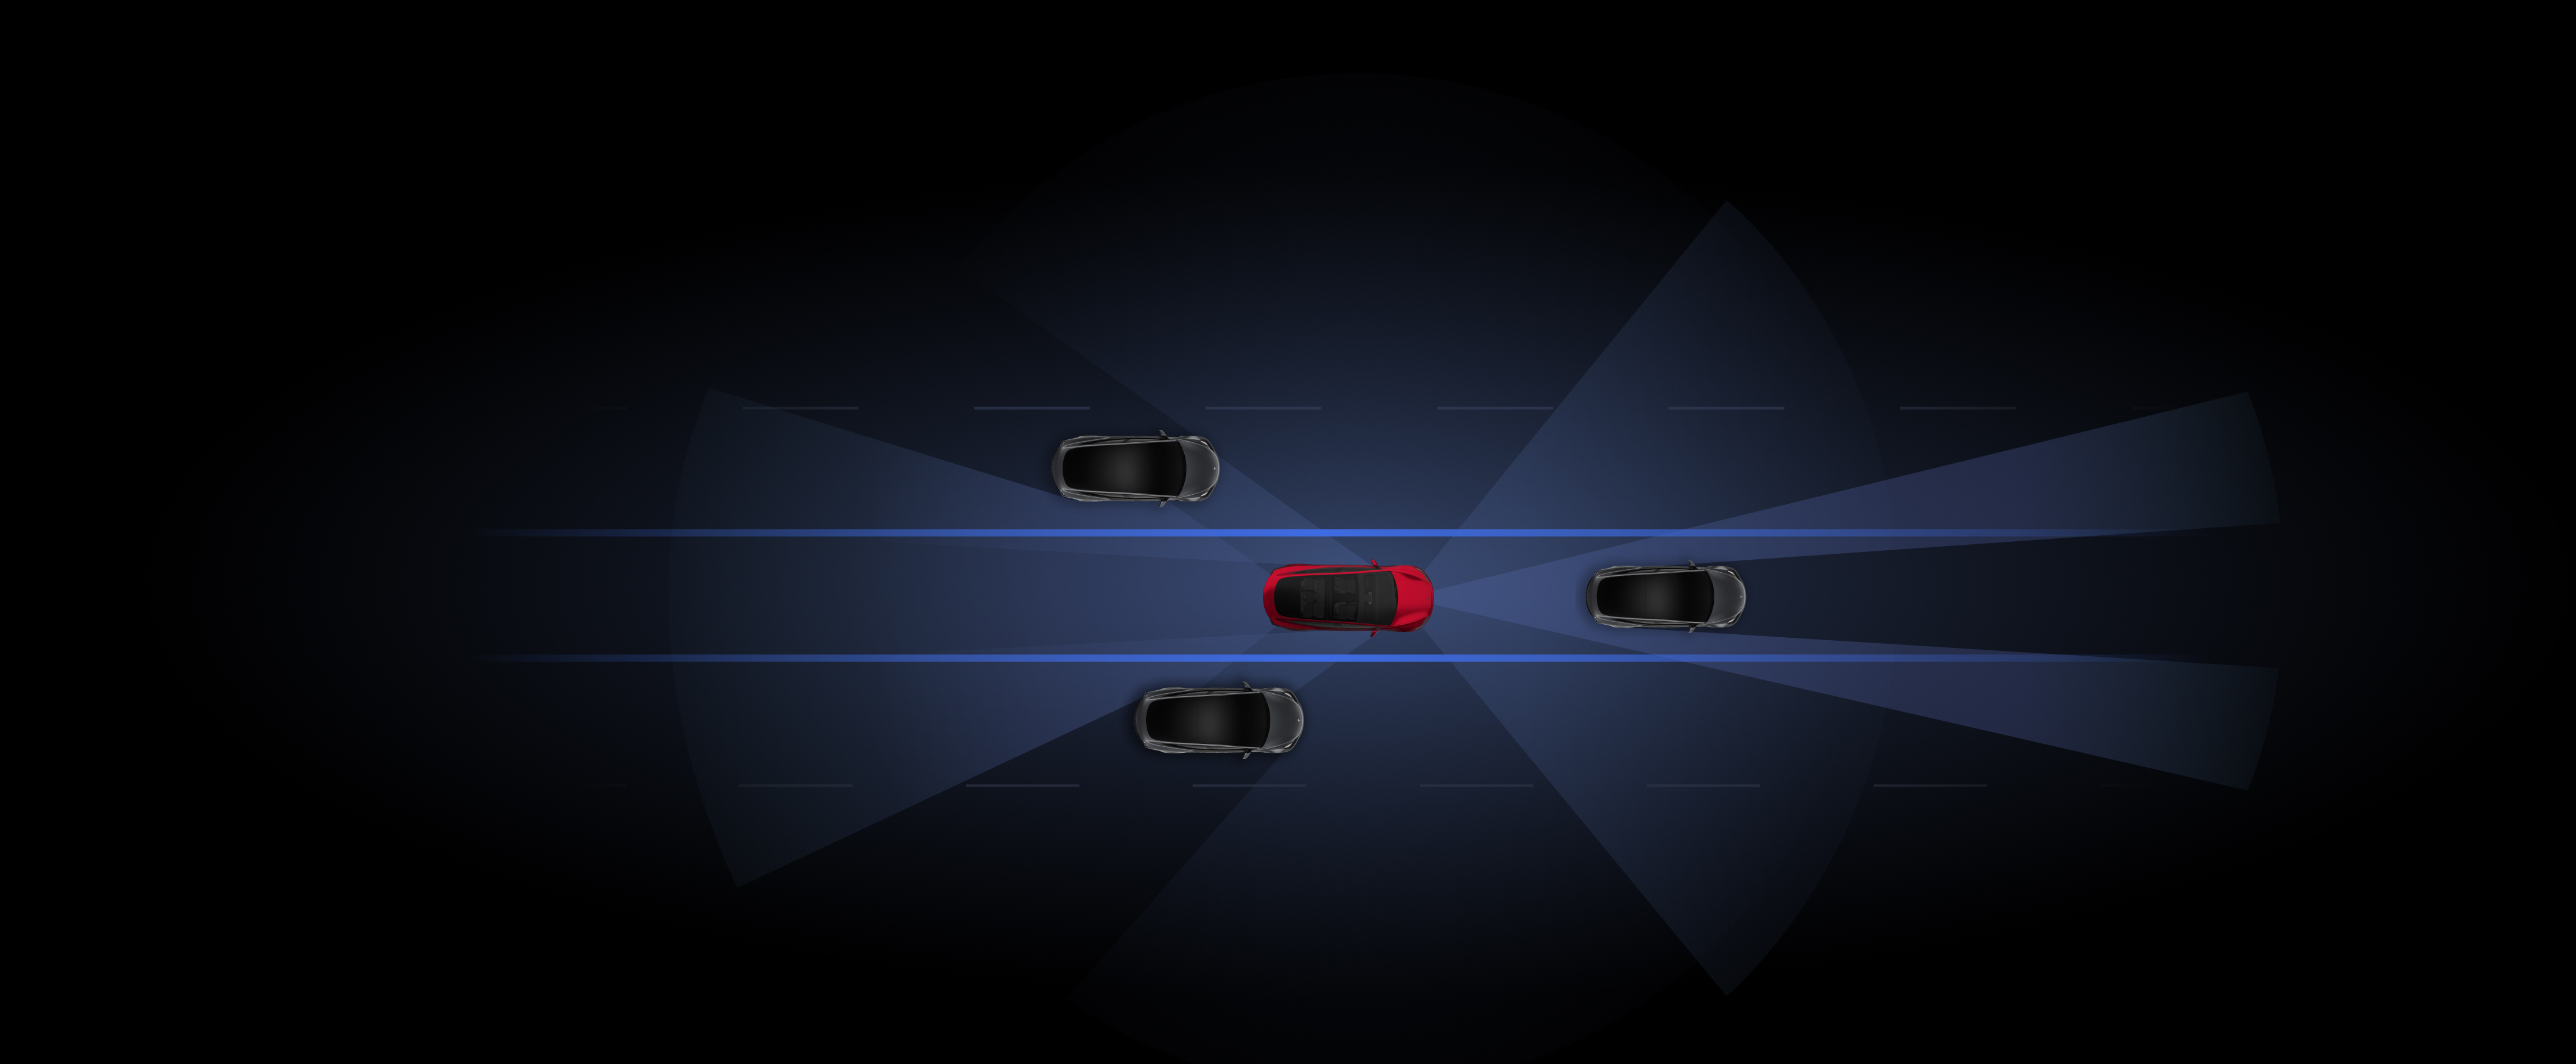 Otopilot özelliklerinin kullanıldığı gri ve kırmızı Tesla araçlarının hazırlanan görselleştirmesi. 